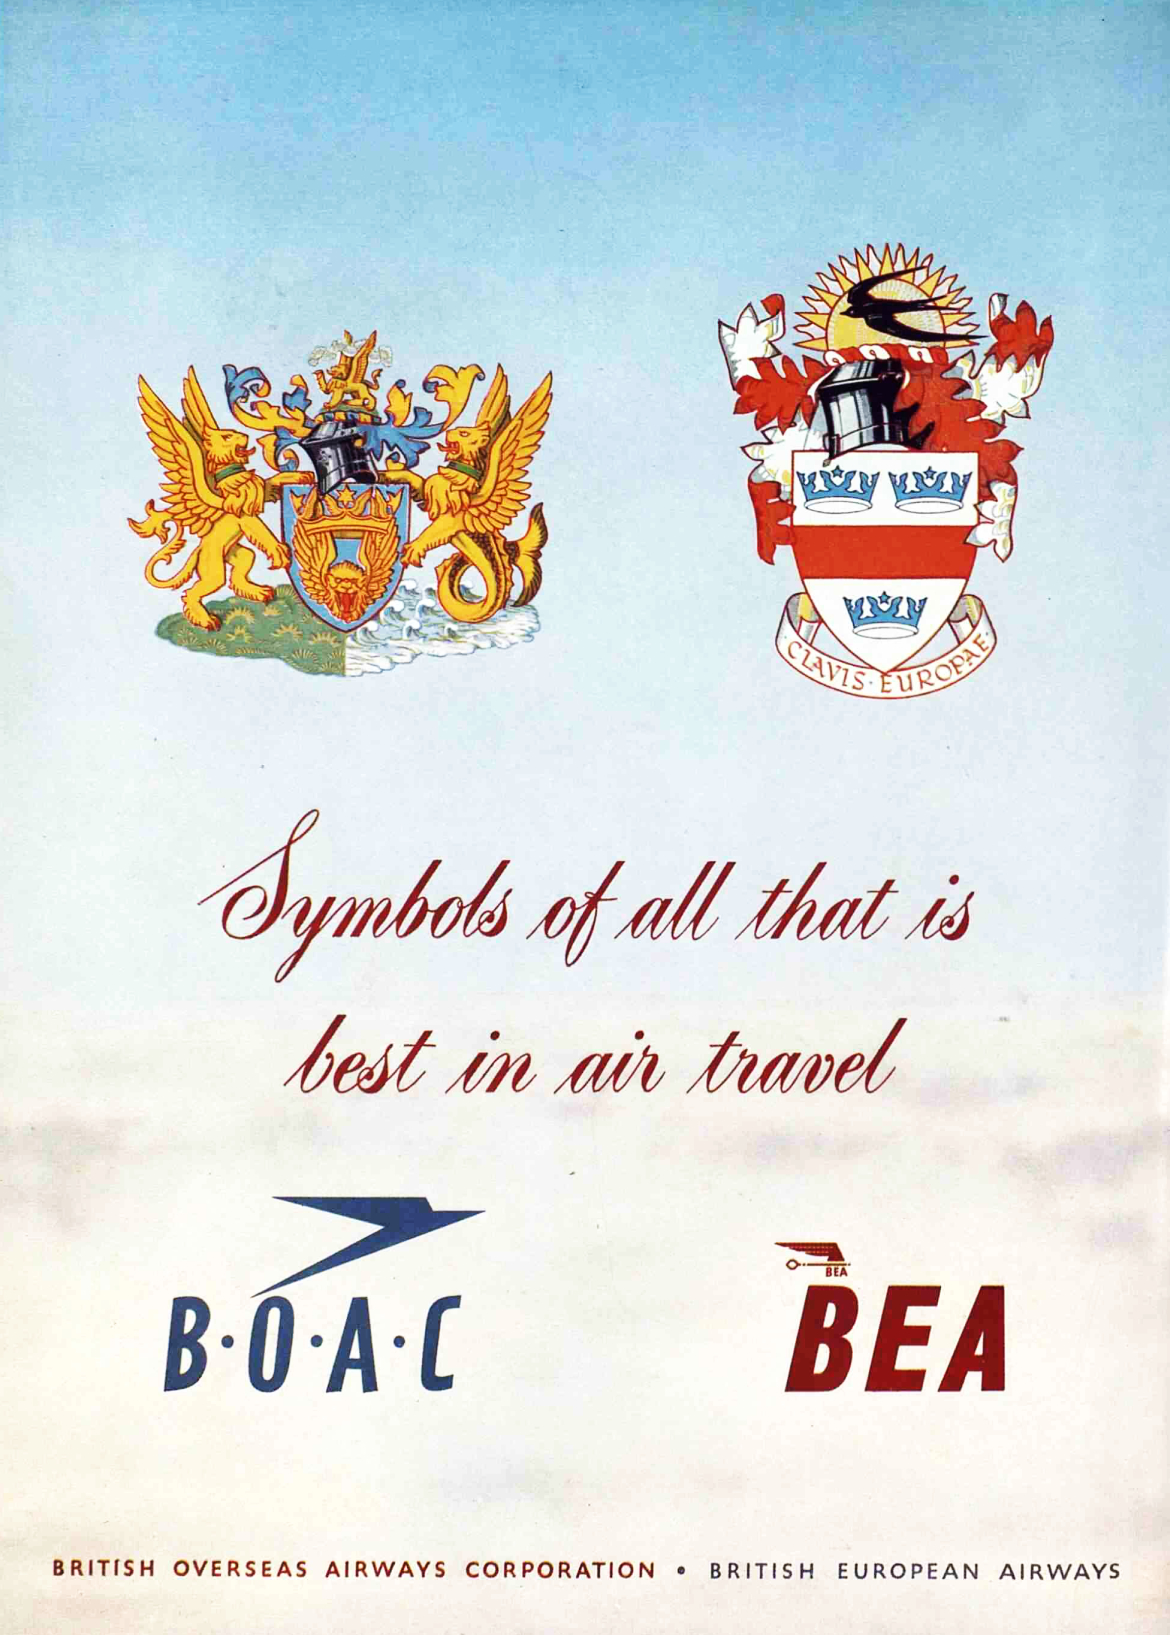 BOAC and BEA